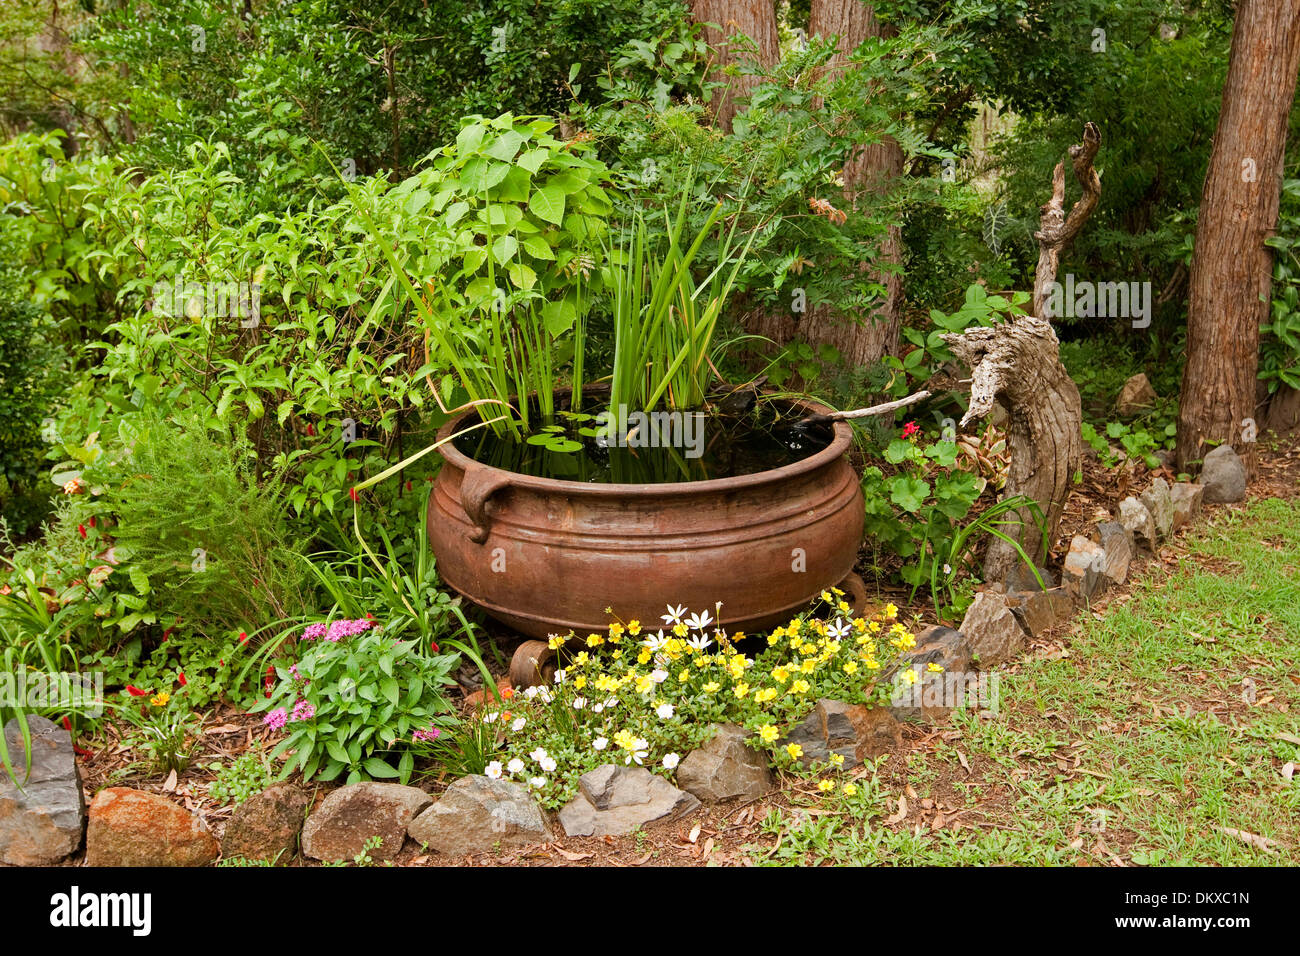 Grande calderone di metallo / vasca - spettacolare unica funzione di acqua con piante acquatiche circondata da fiori colorati e arbusti Foto Stock